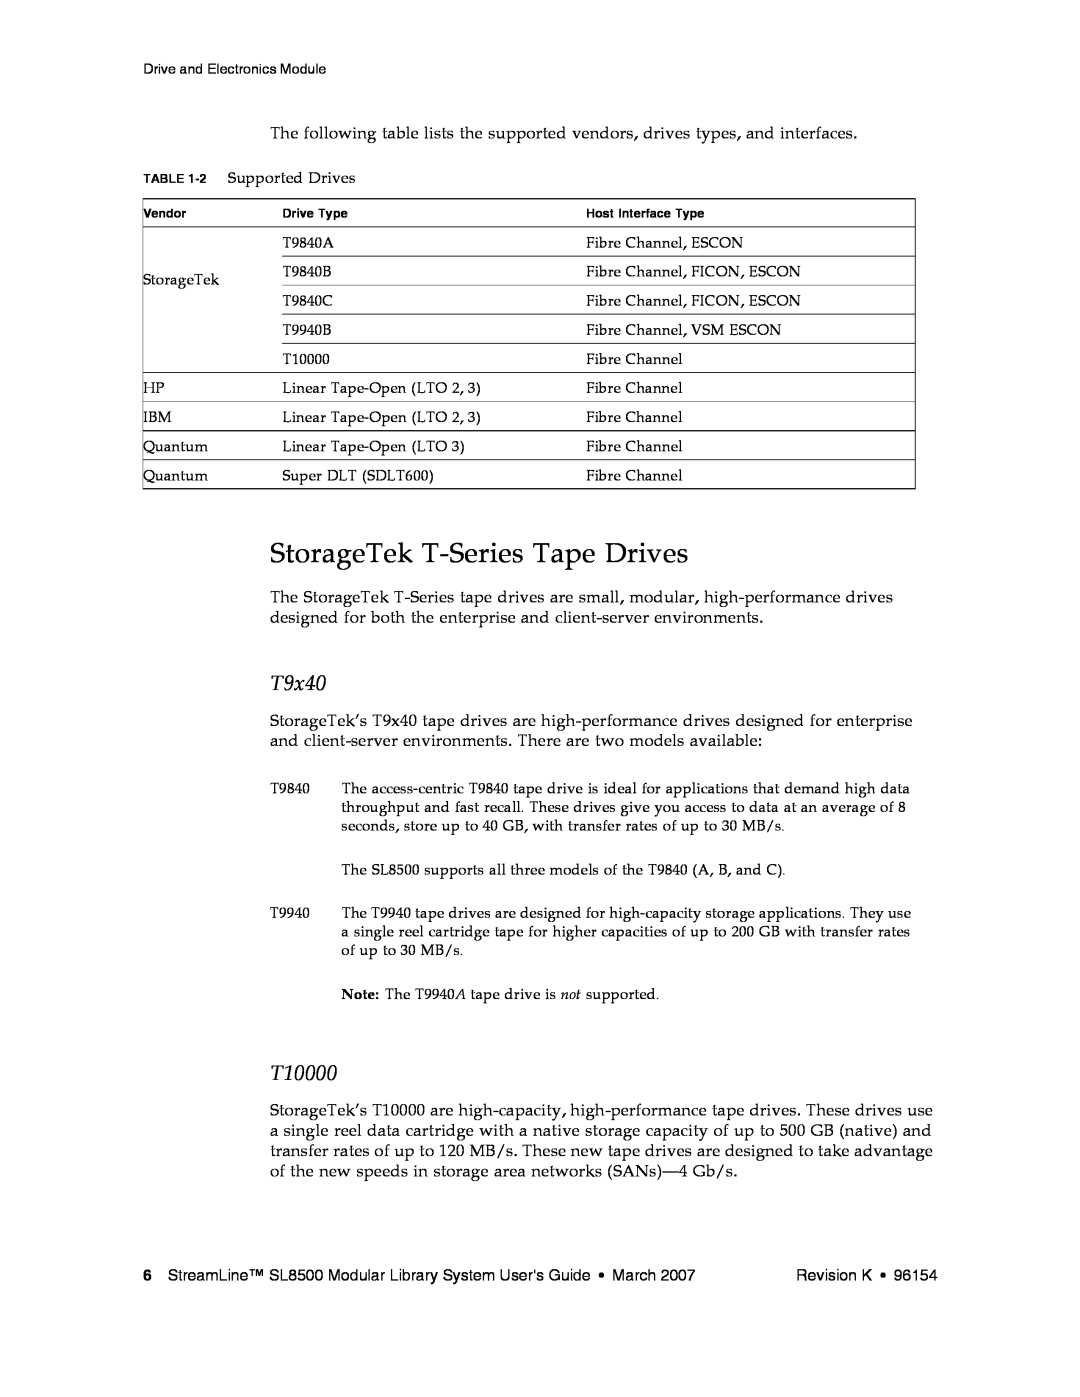 Sun Microsystems SL8500 manual StorageTek T-Series Tape Drives, T9x40, T10000 